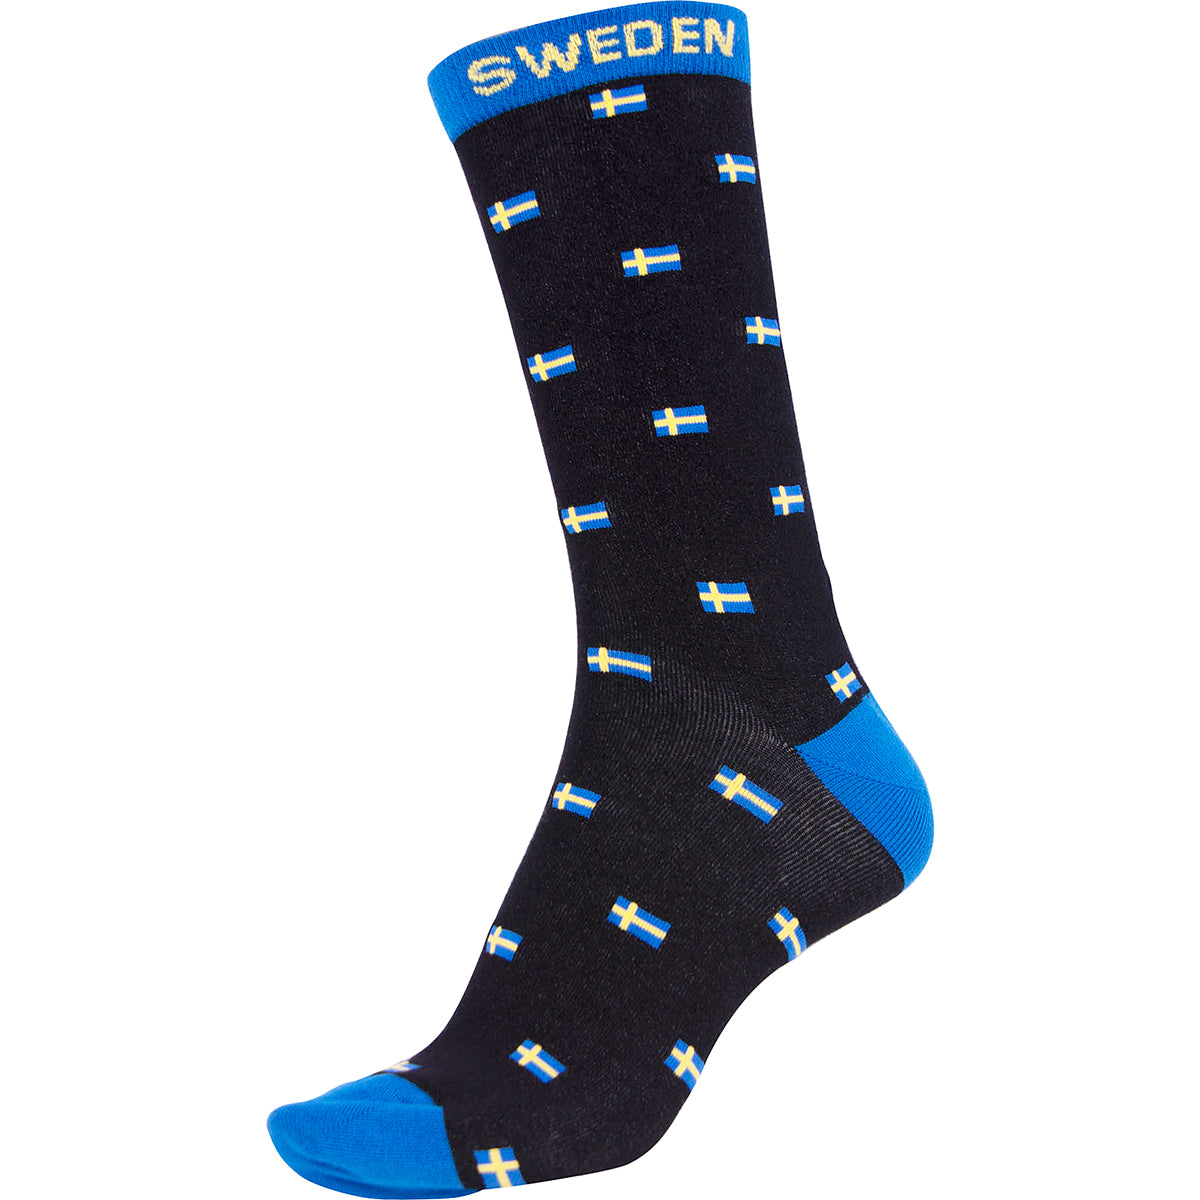 Strumpor med Svensk Flagga  - Socks with Swedish Flags